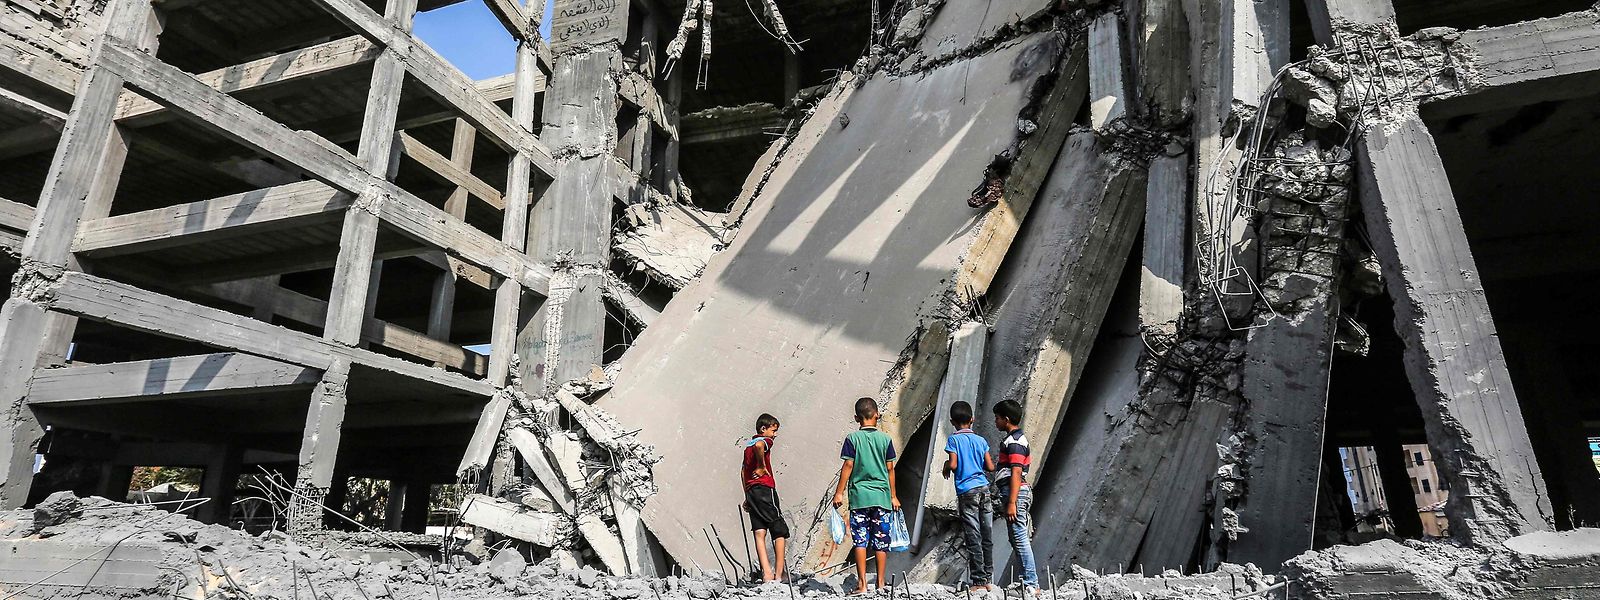 Bei dem israelischen Luftangriff wurden nicht nur Gebäude getroffen, sondern auch zwei Teenager durch Granatsplitter getötet.